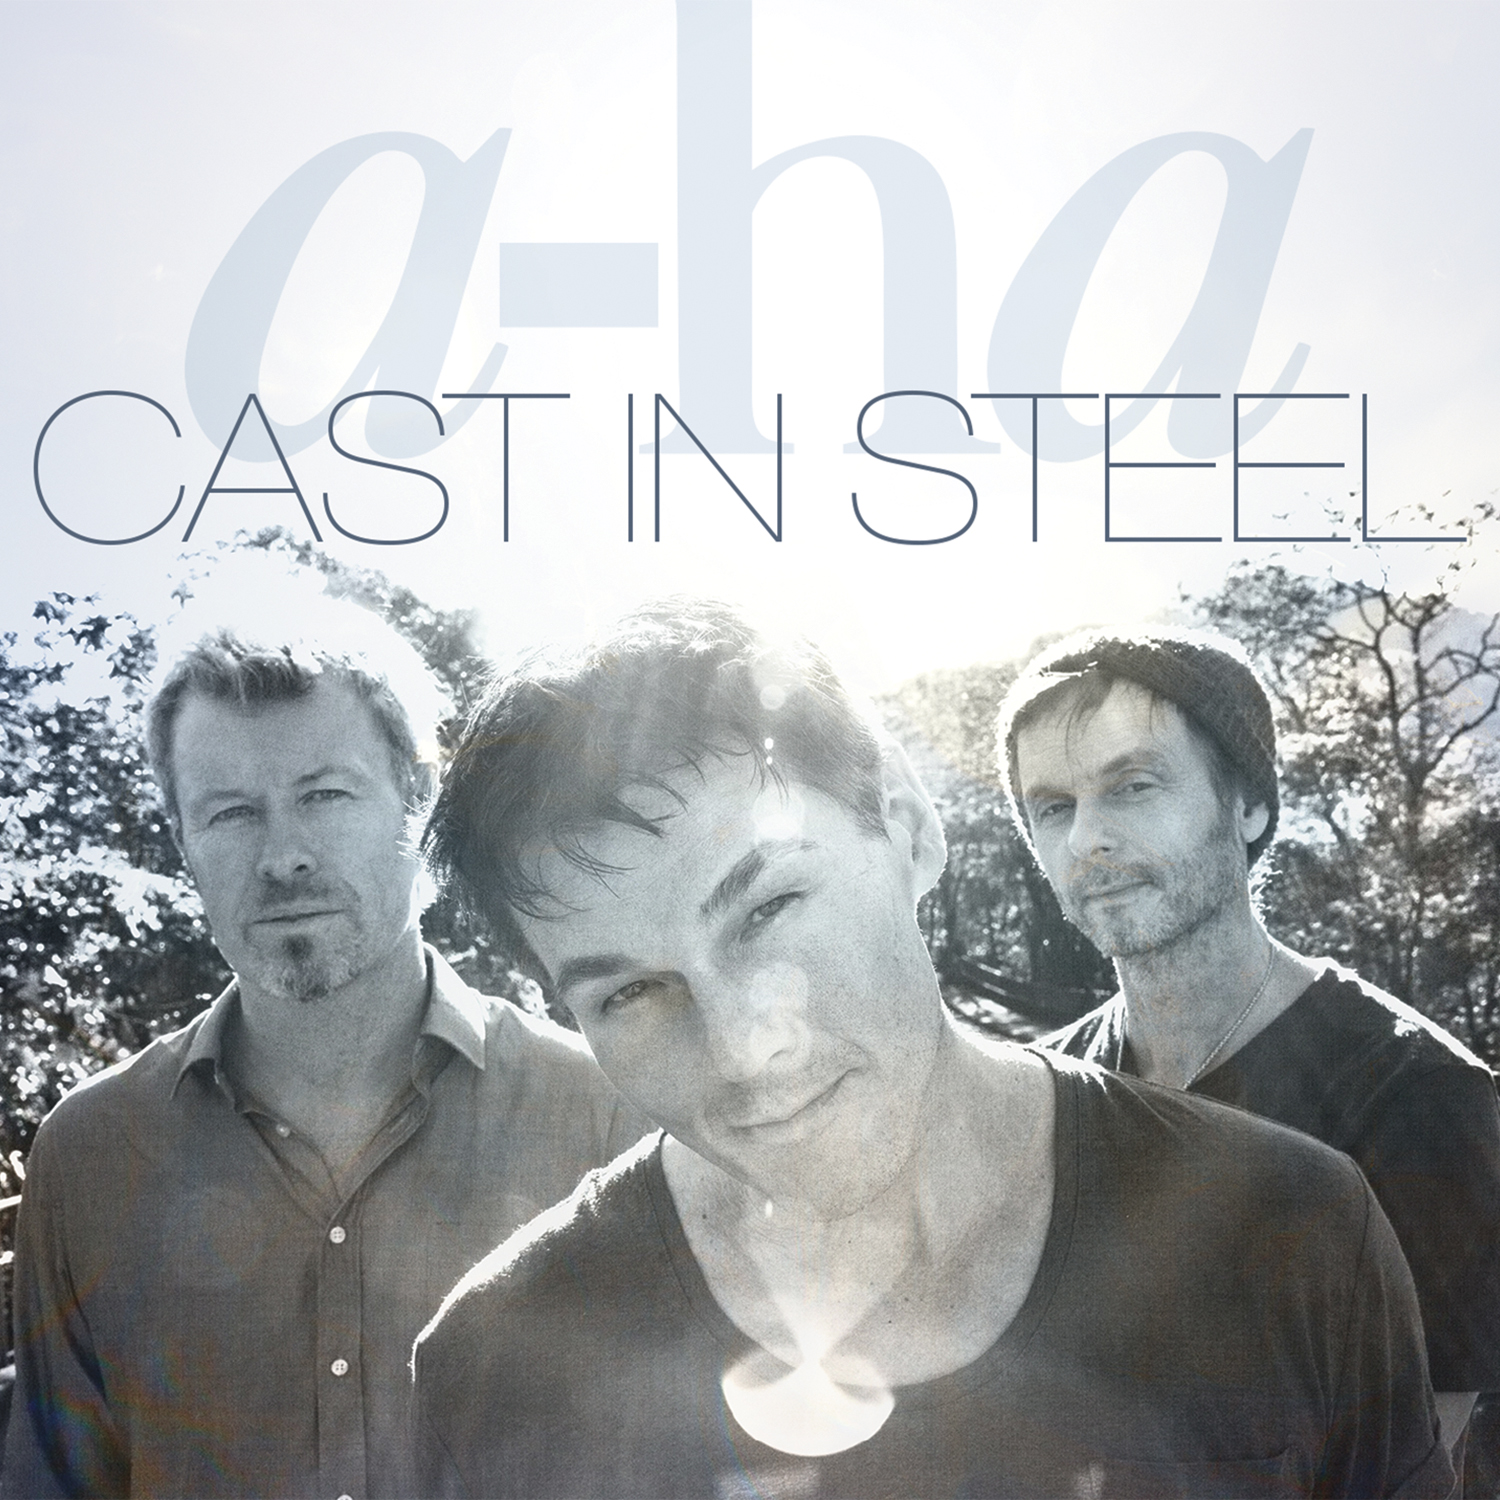 Steel - Cast In - A-Ha (CD)